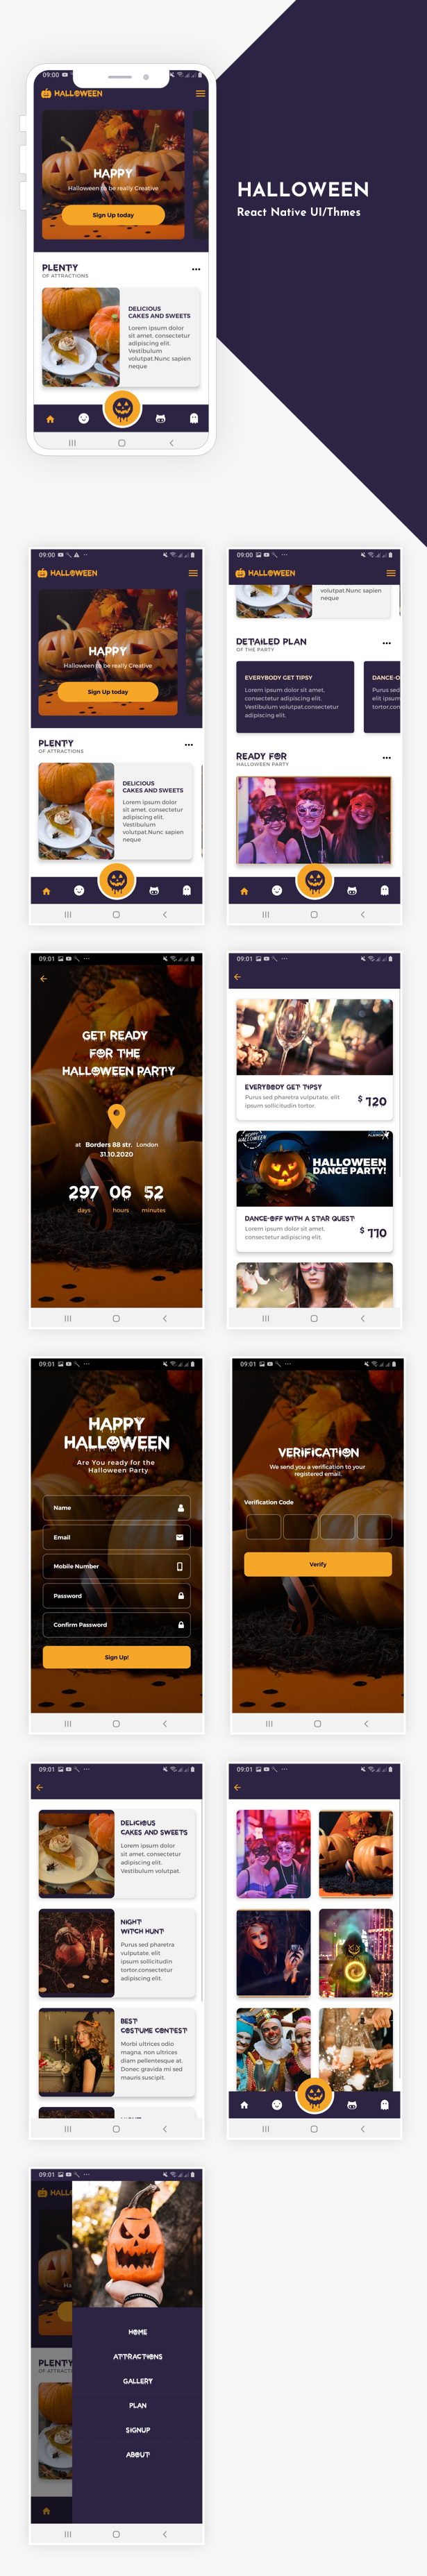 Halloween App UI